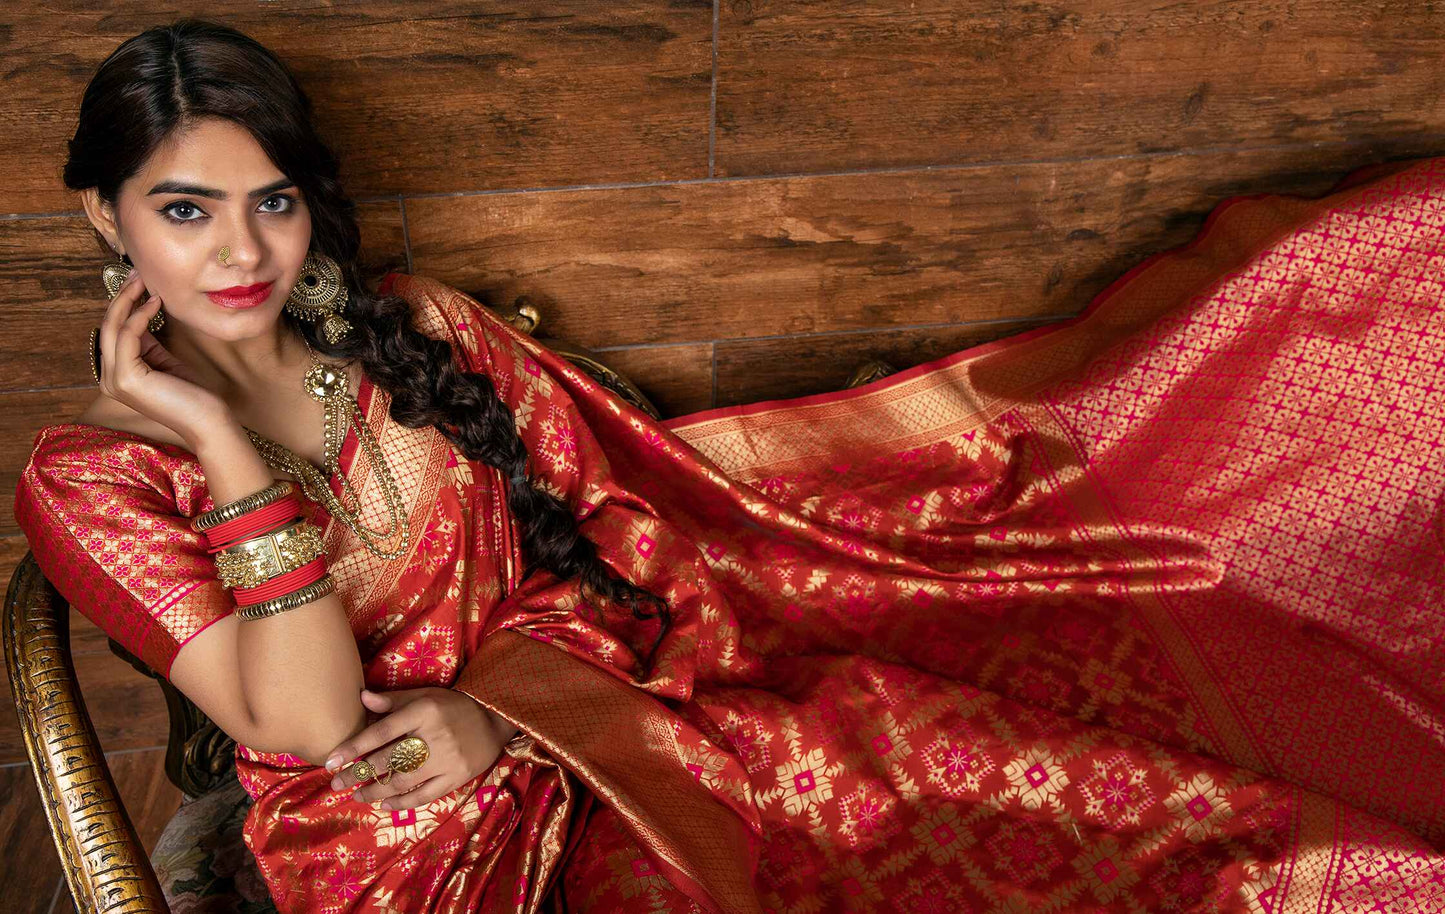 Red Benarasi Weaving Silk Saree